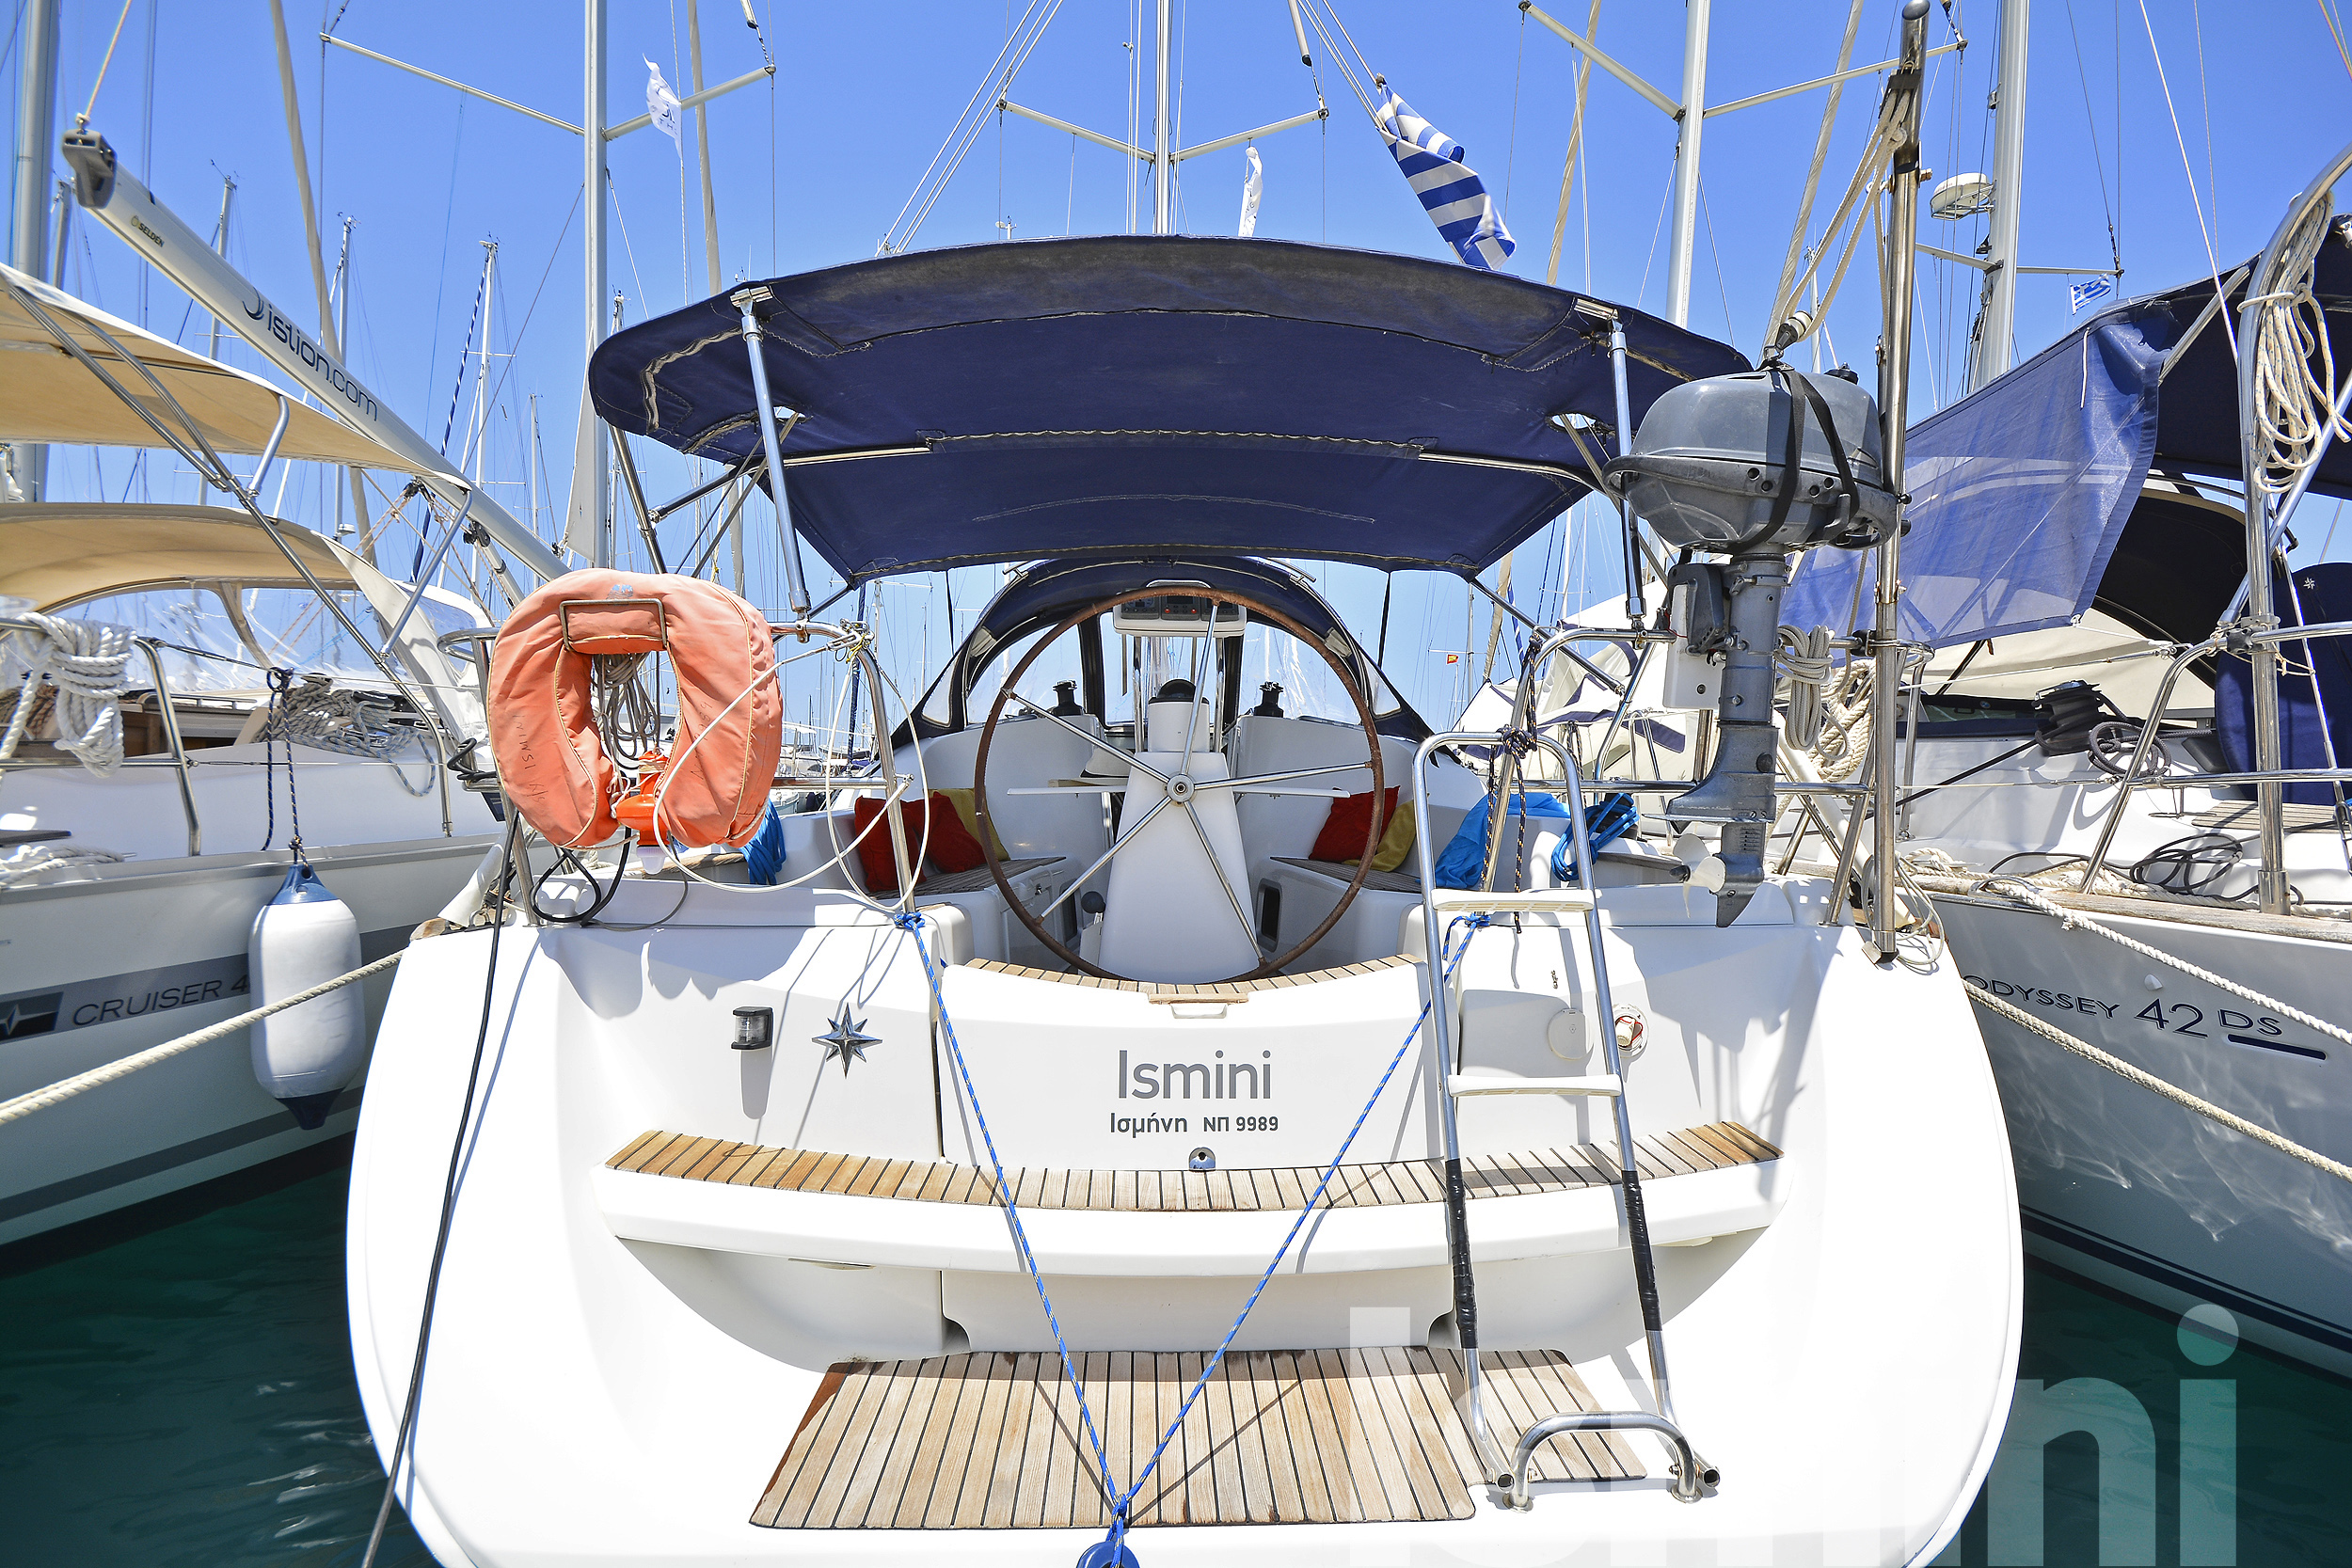 Sun Odyssey 36i - Yacht Charter Preveza & Boat hire in Greece Ionian Sea South Ionian Lefkada Preveza Preveza Main Port 1